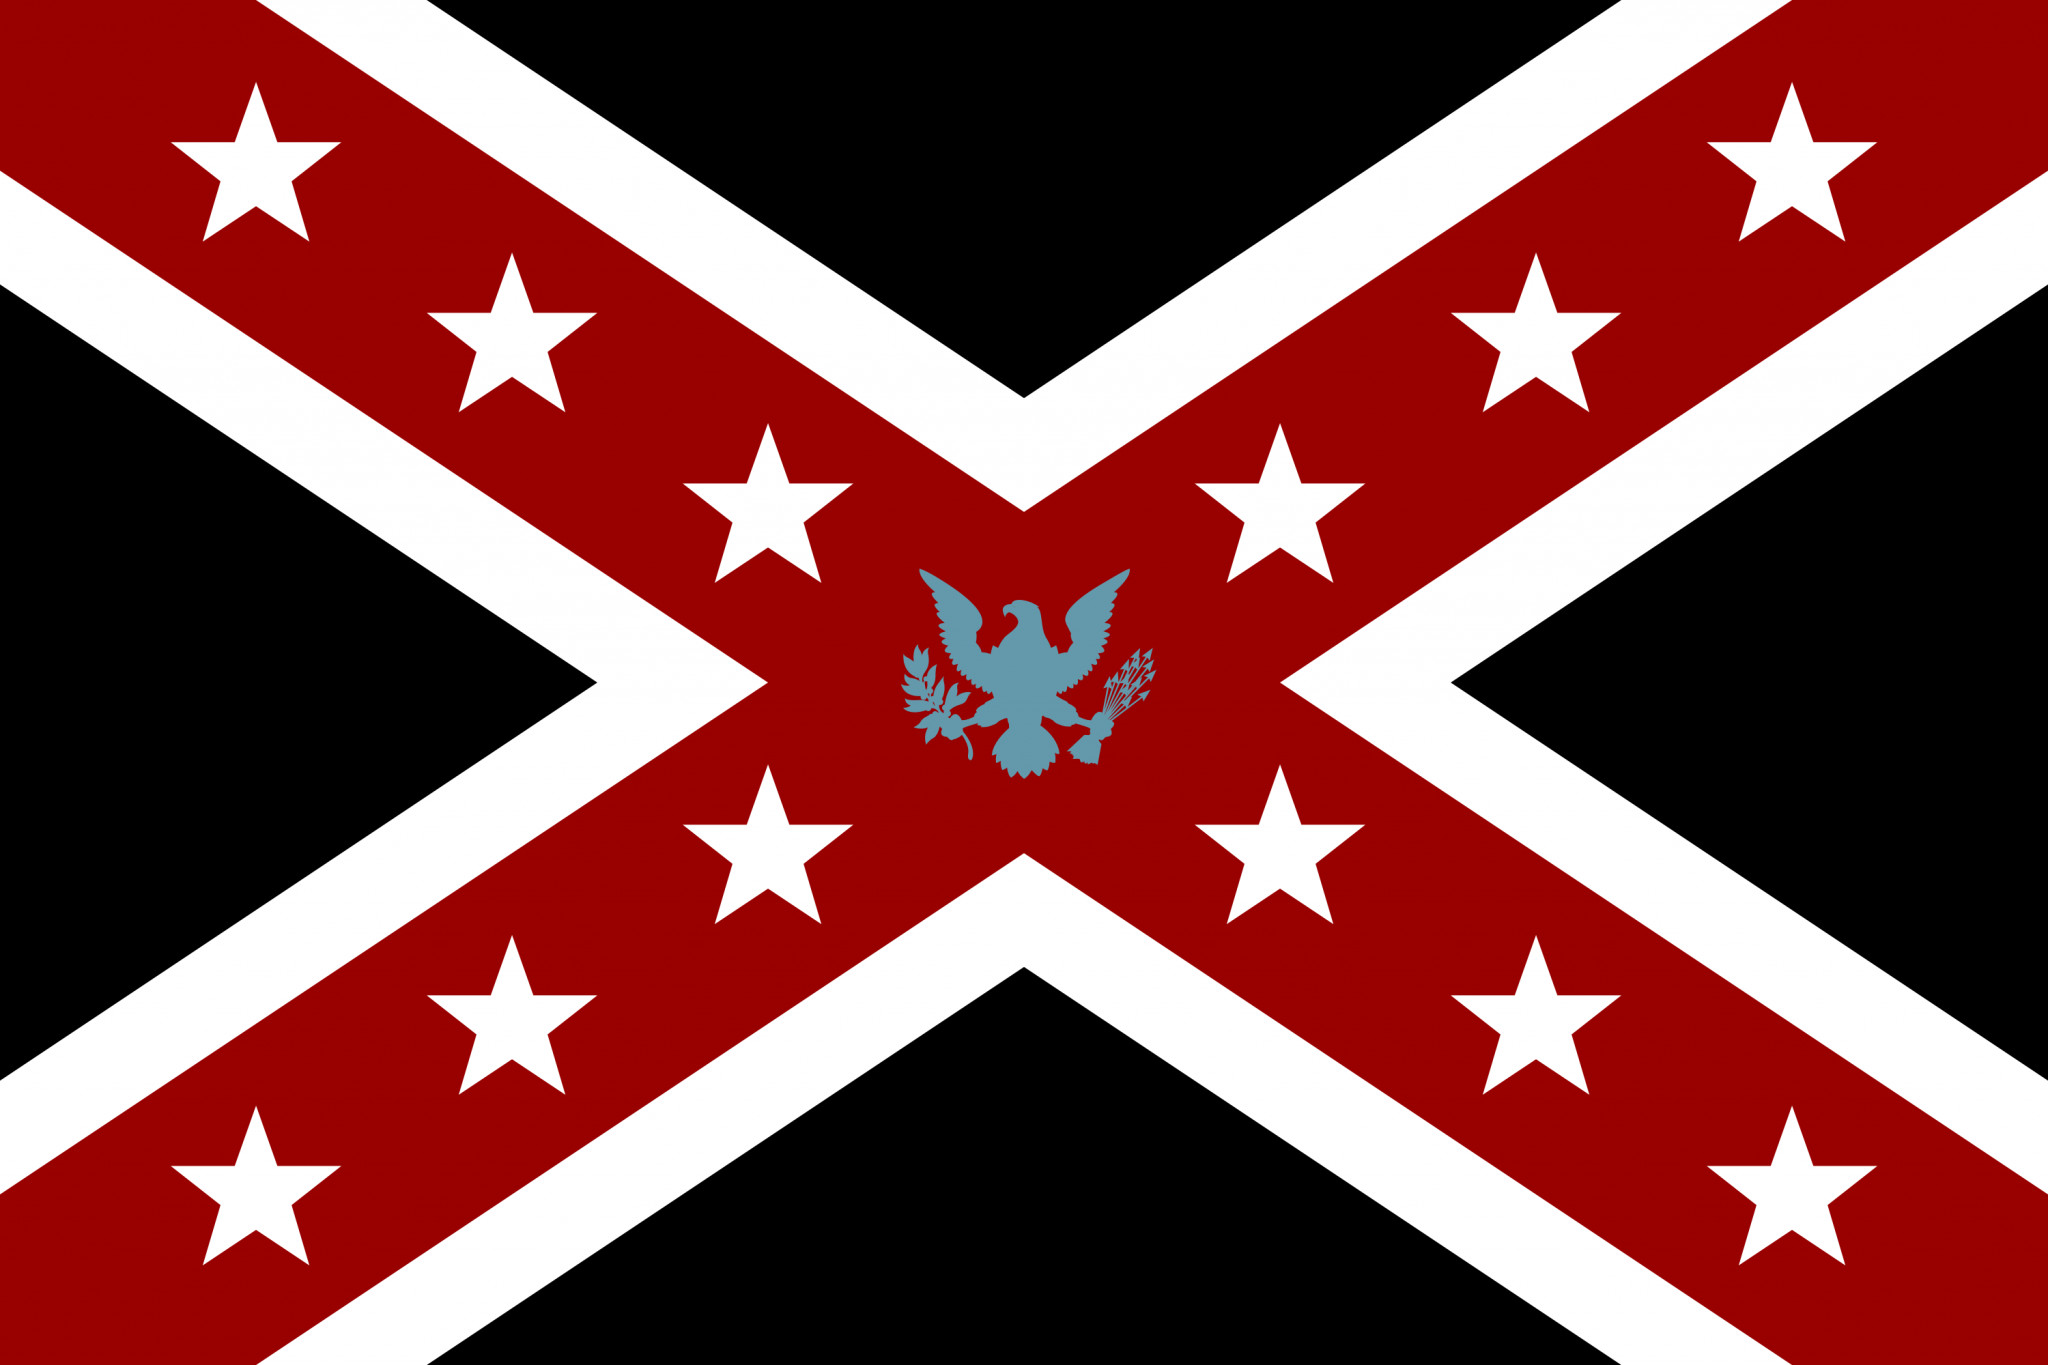 2048x1365 Confederate Flag iPhone 5 Wallpaper (640x1136) | camo | Pinterest .